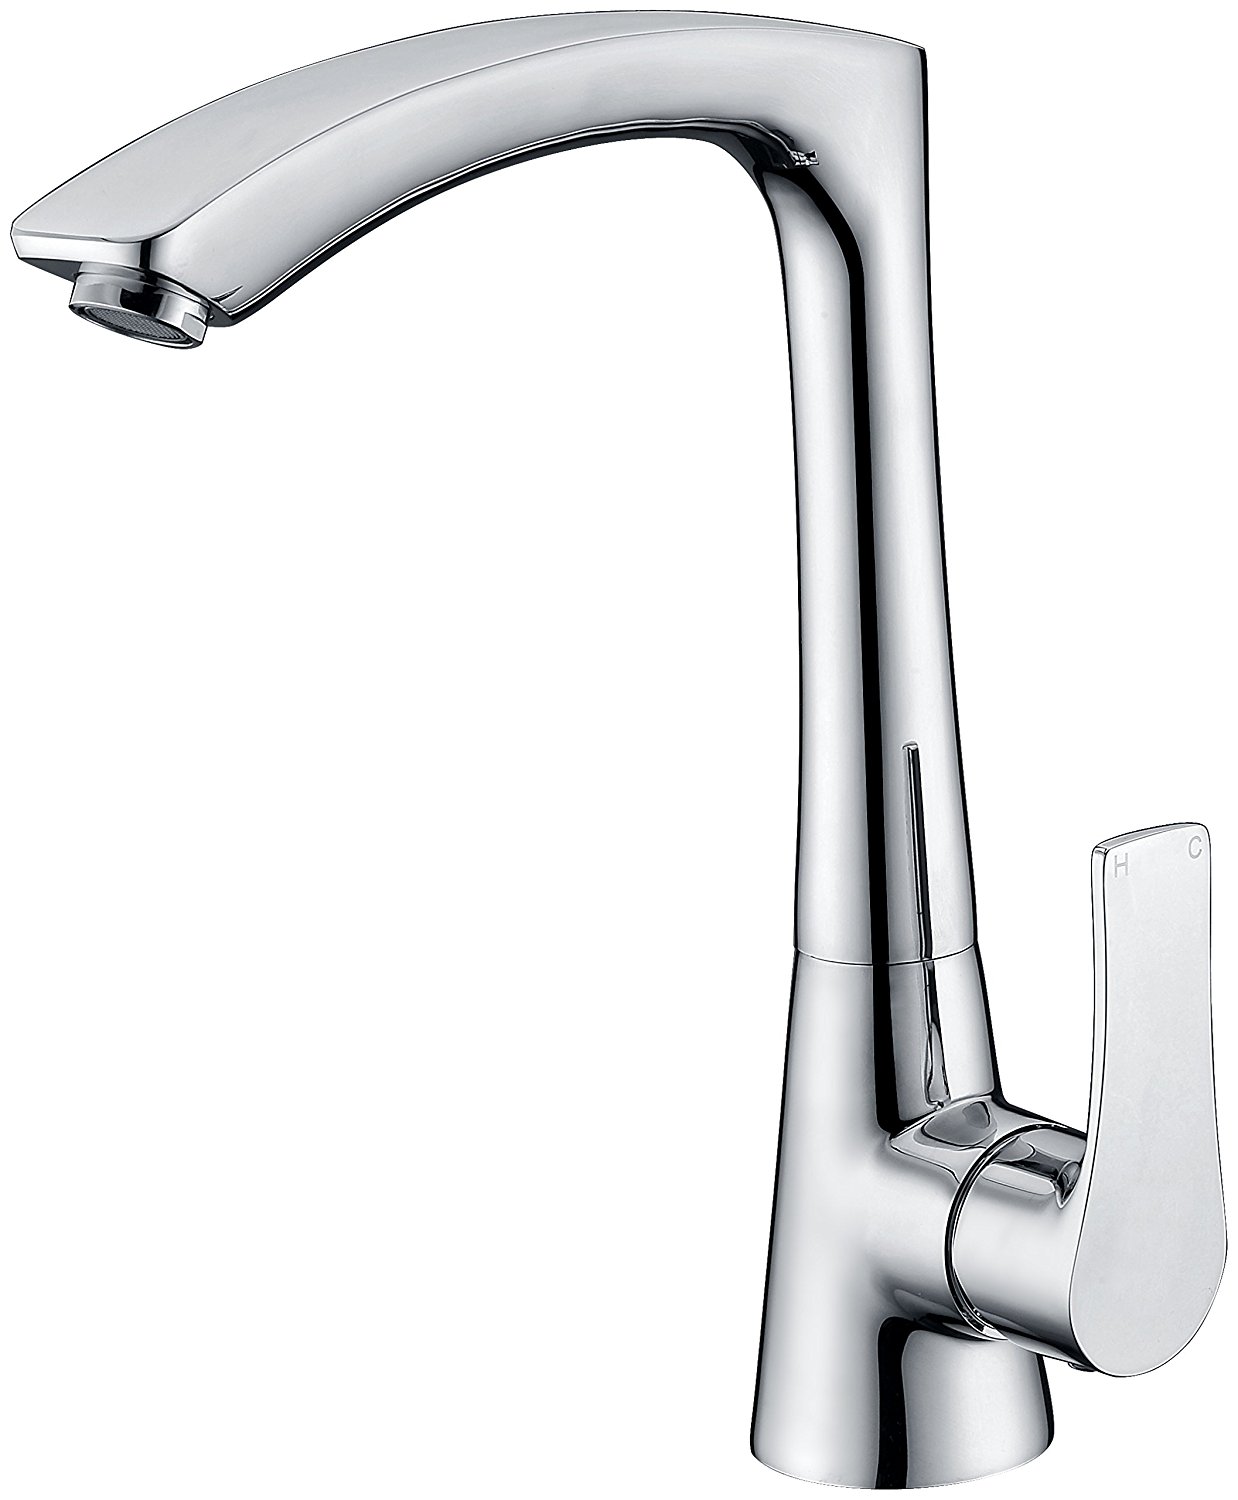 seville-single-handle-kitchen-sink-faucet